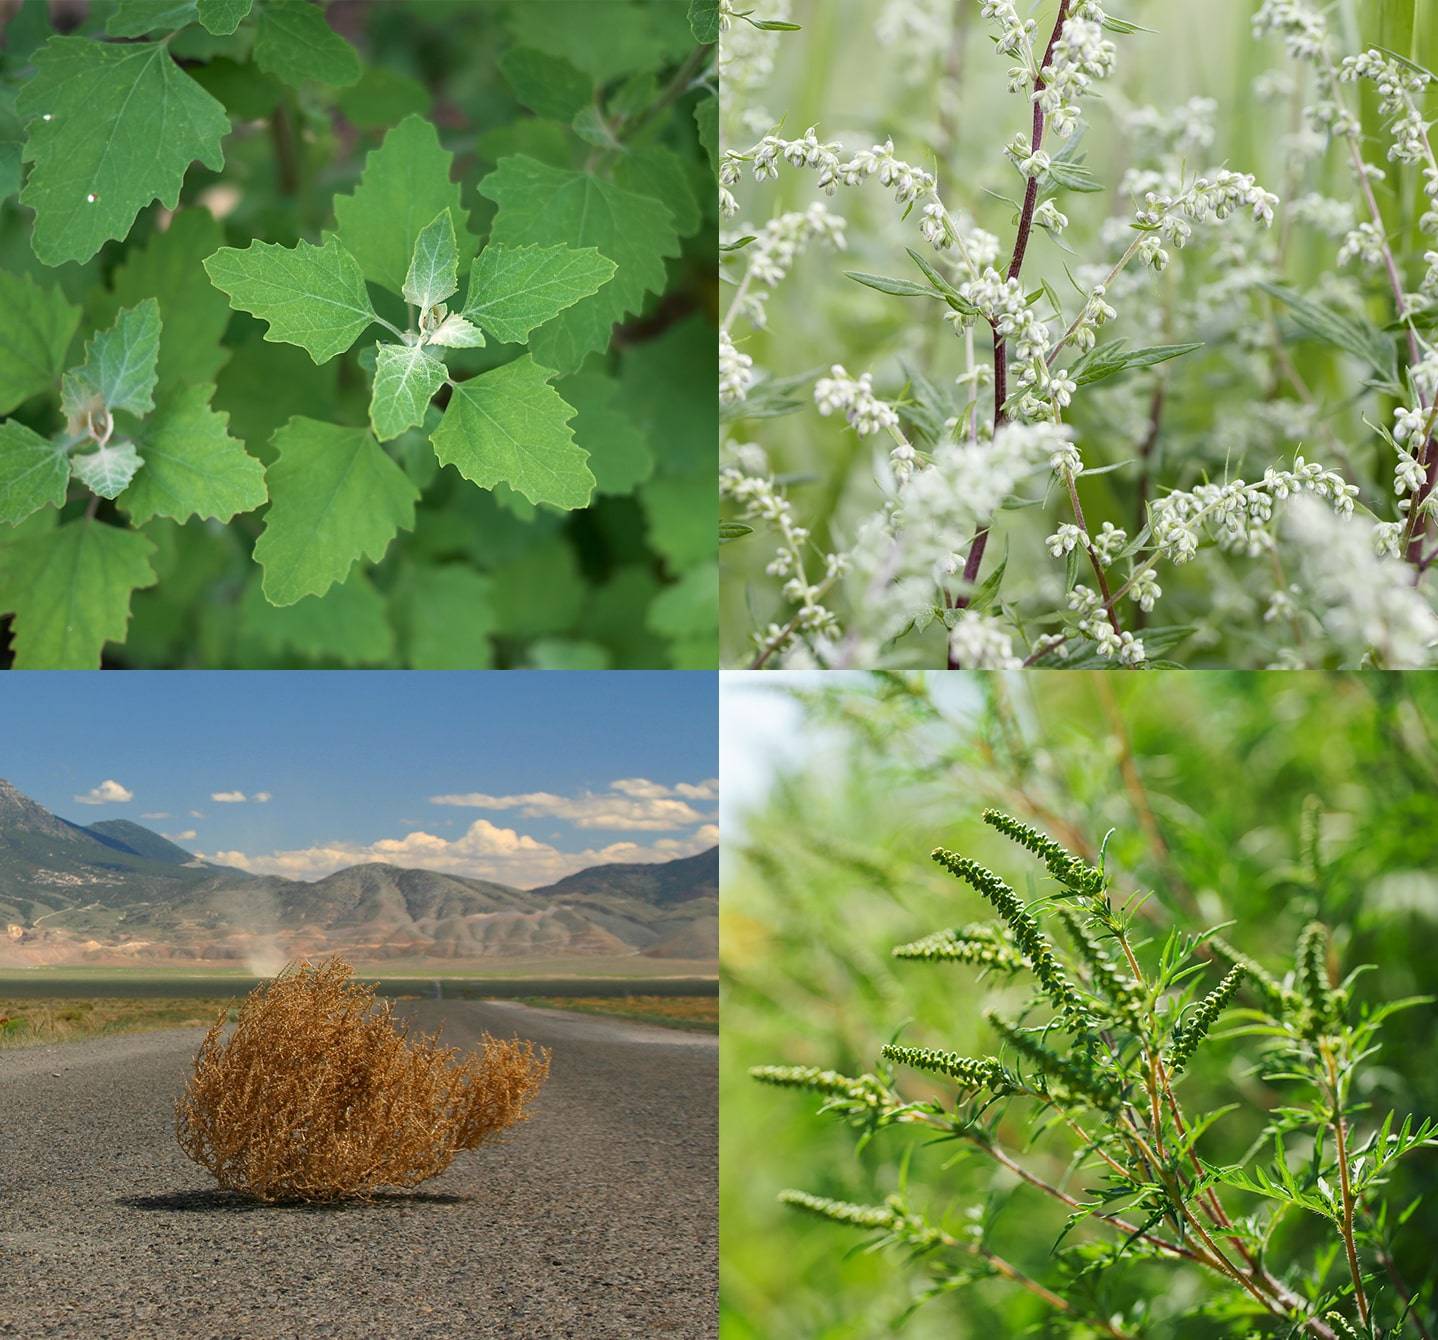  Les types de plantes les plus courants qui peuvent causer une allergie au pollen des mauvaises herbes comprennent l’herbe à poux, les virevoltants, le chénopode et l’armoise